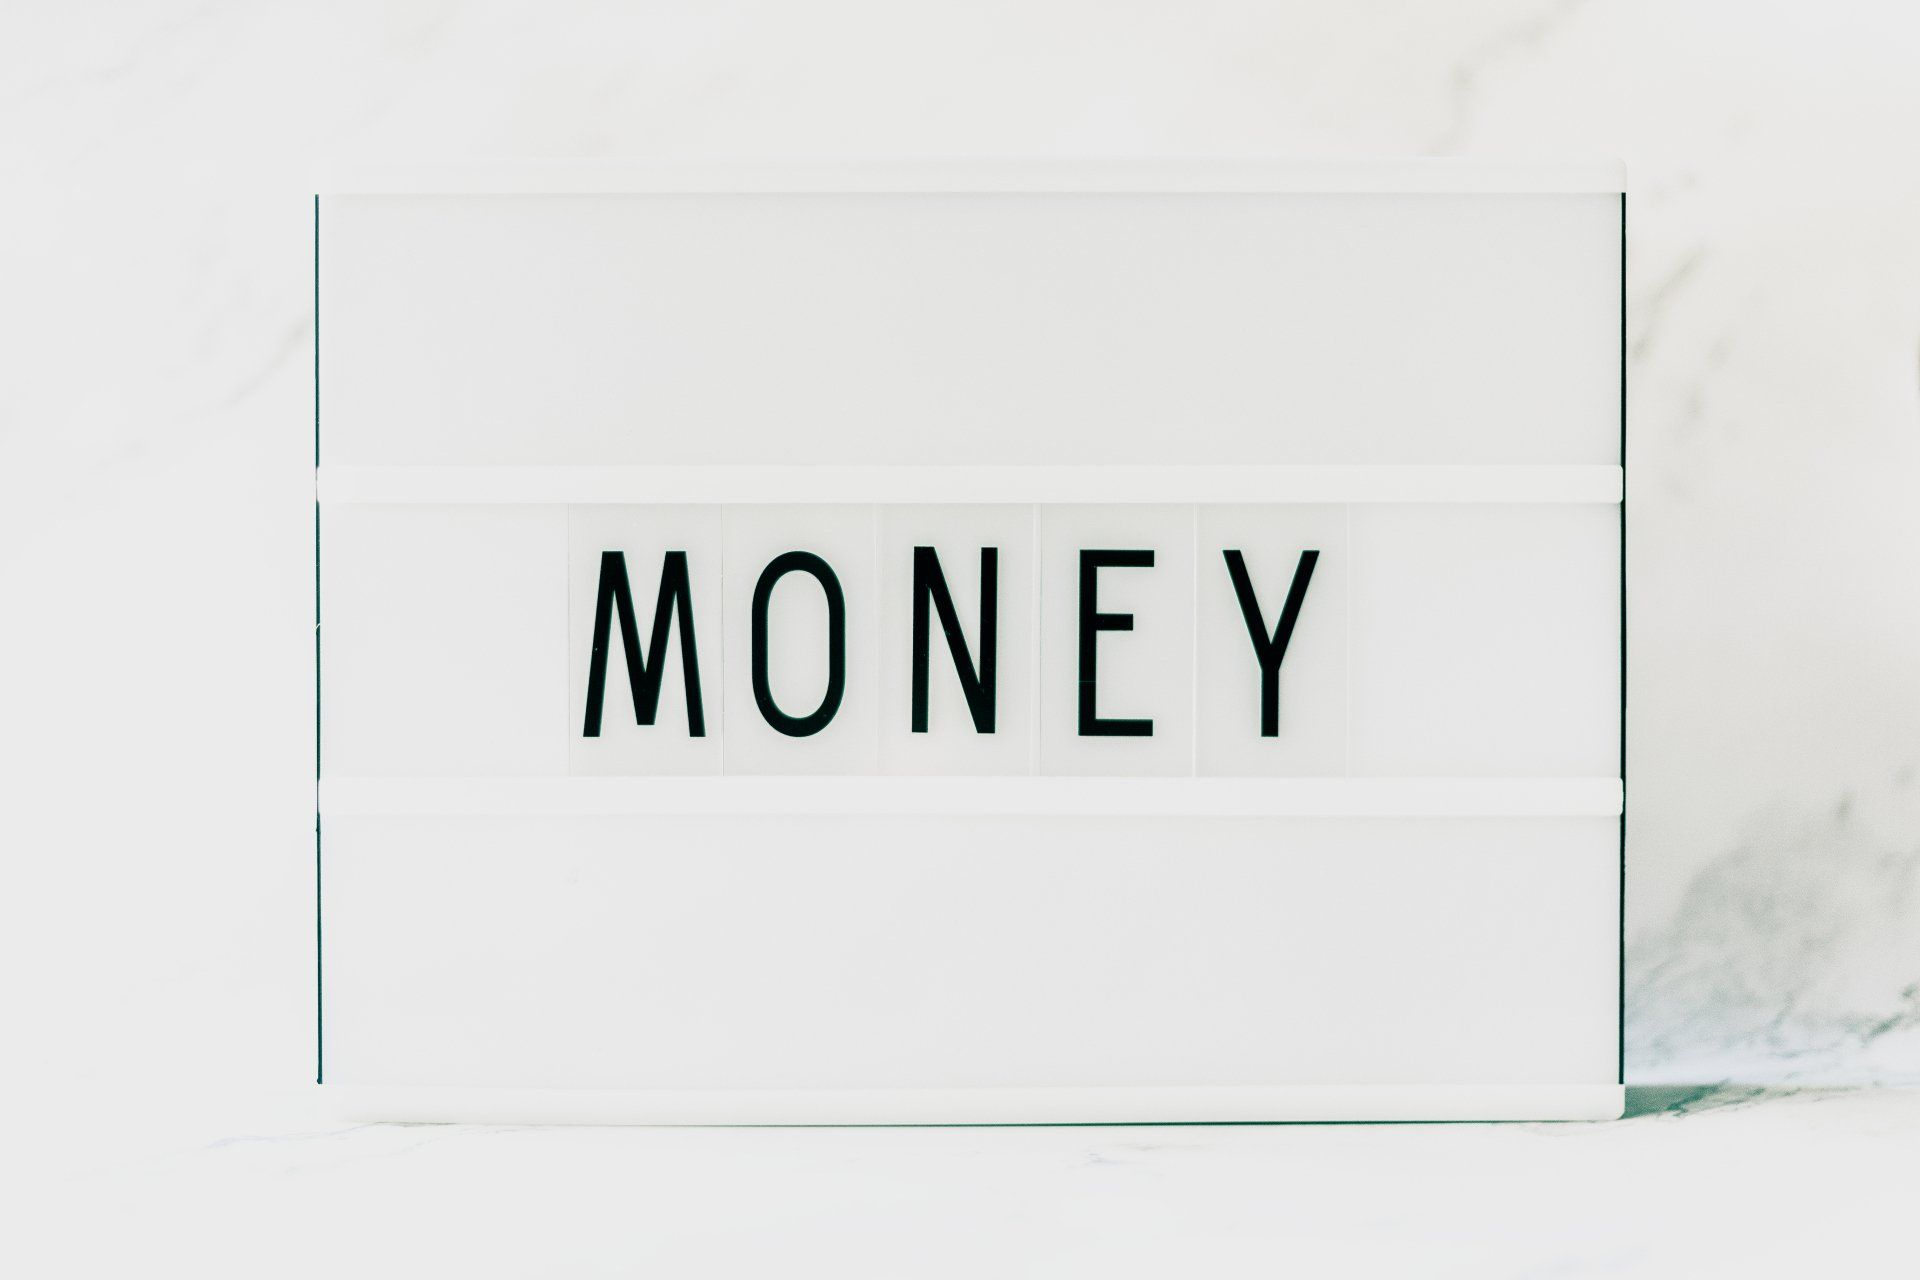 Het geschreven woord money op een bord.